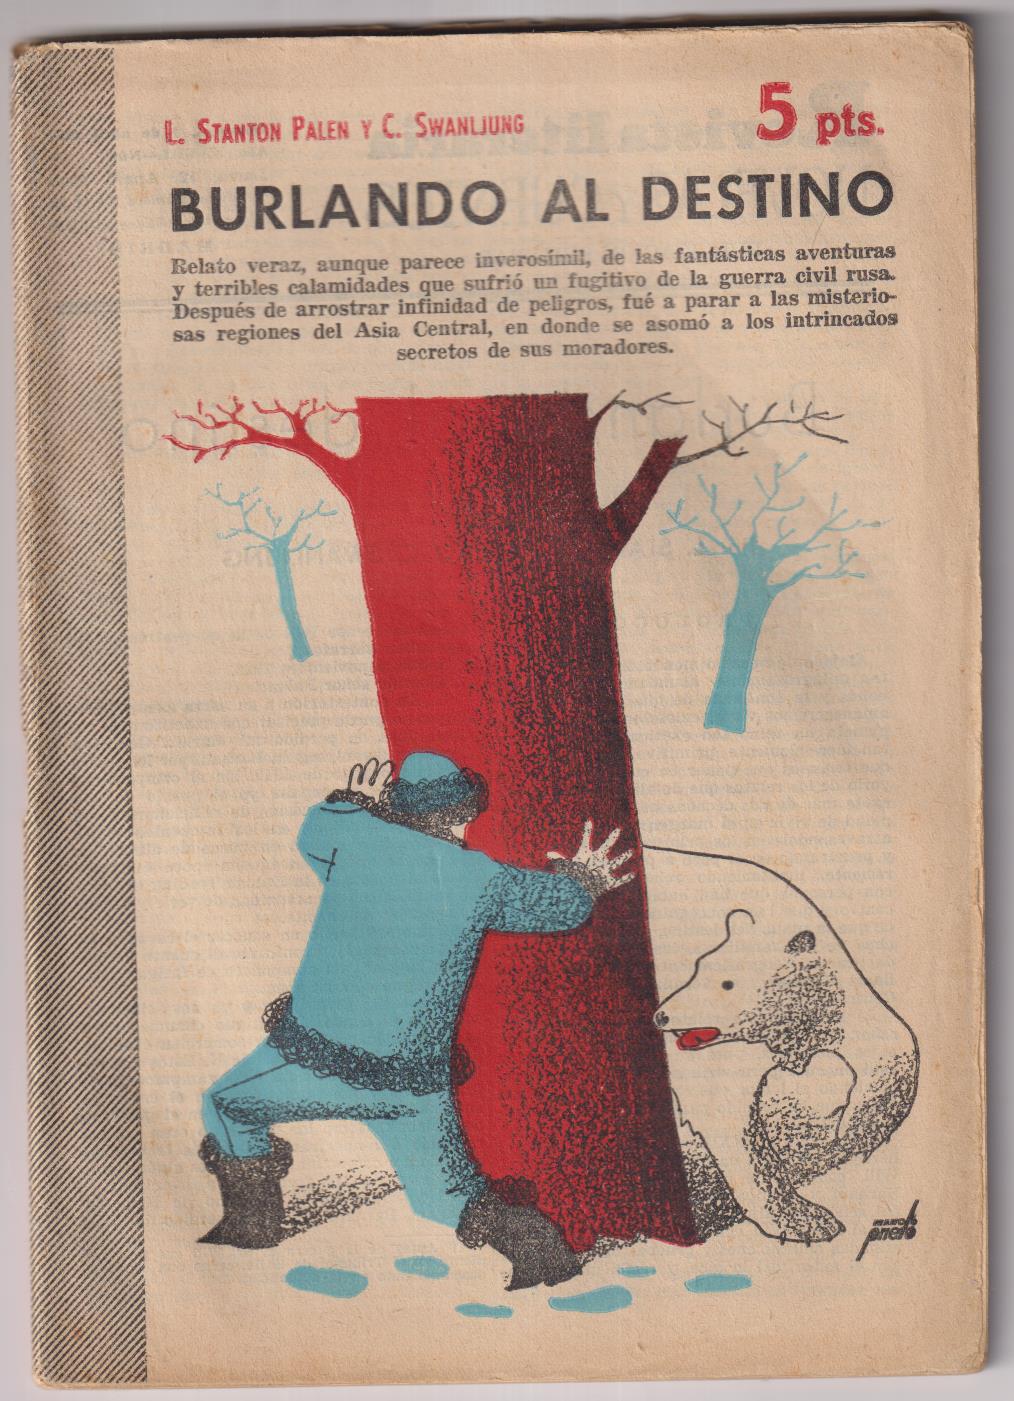 Revista Literaria Novelas y Cuentos nº 1299. R. S. Palen y C. Swanljung. Burlando al destino, 1956